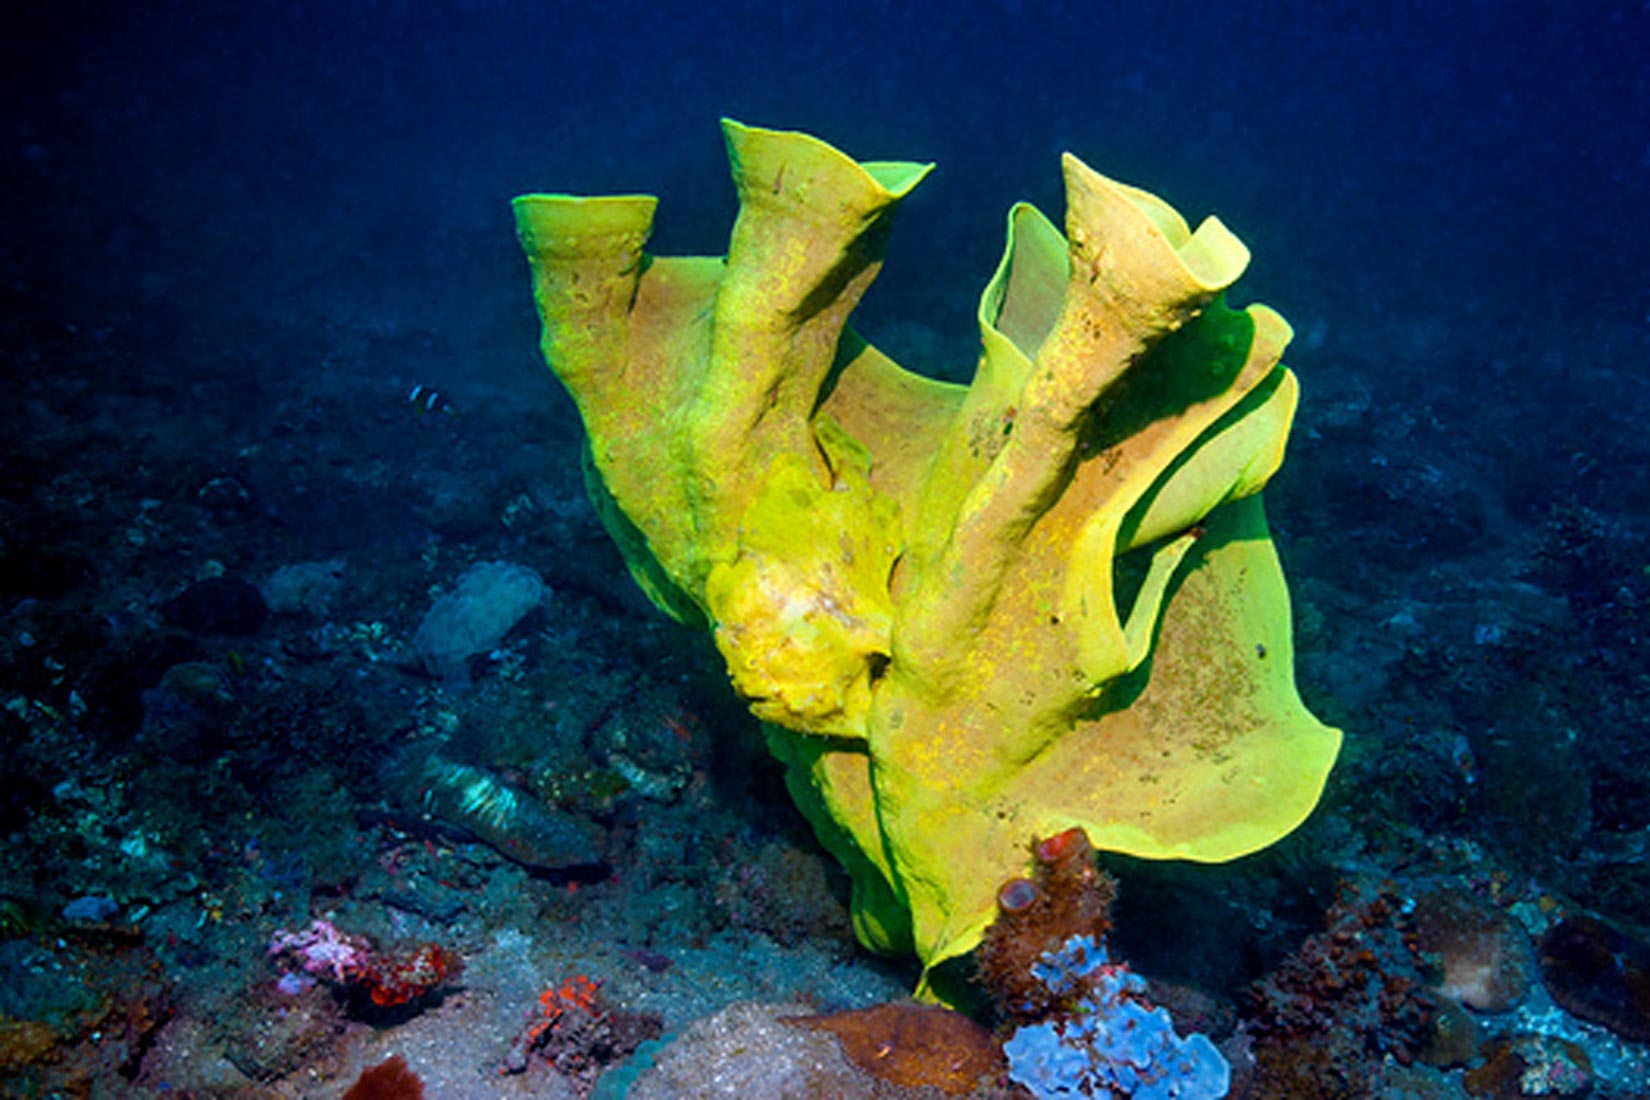 Slika prikazuje organizam spužvaste teksture koji je pričvršćen za dno morskog dna. Žute je boje.